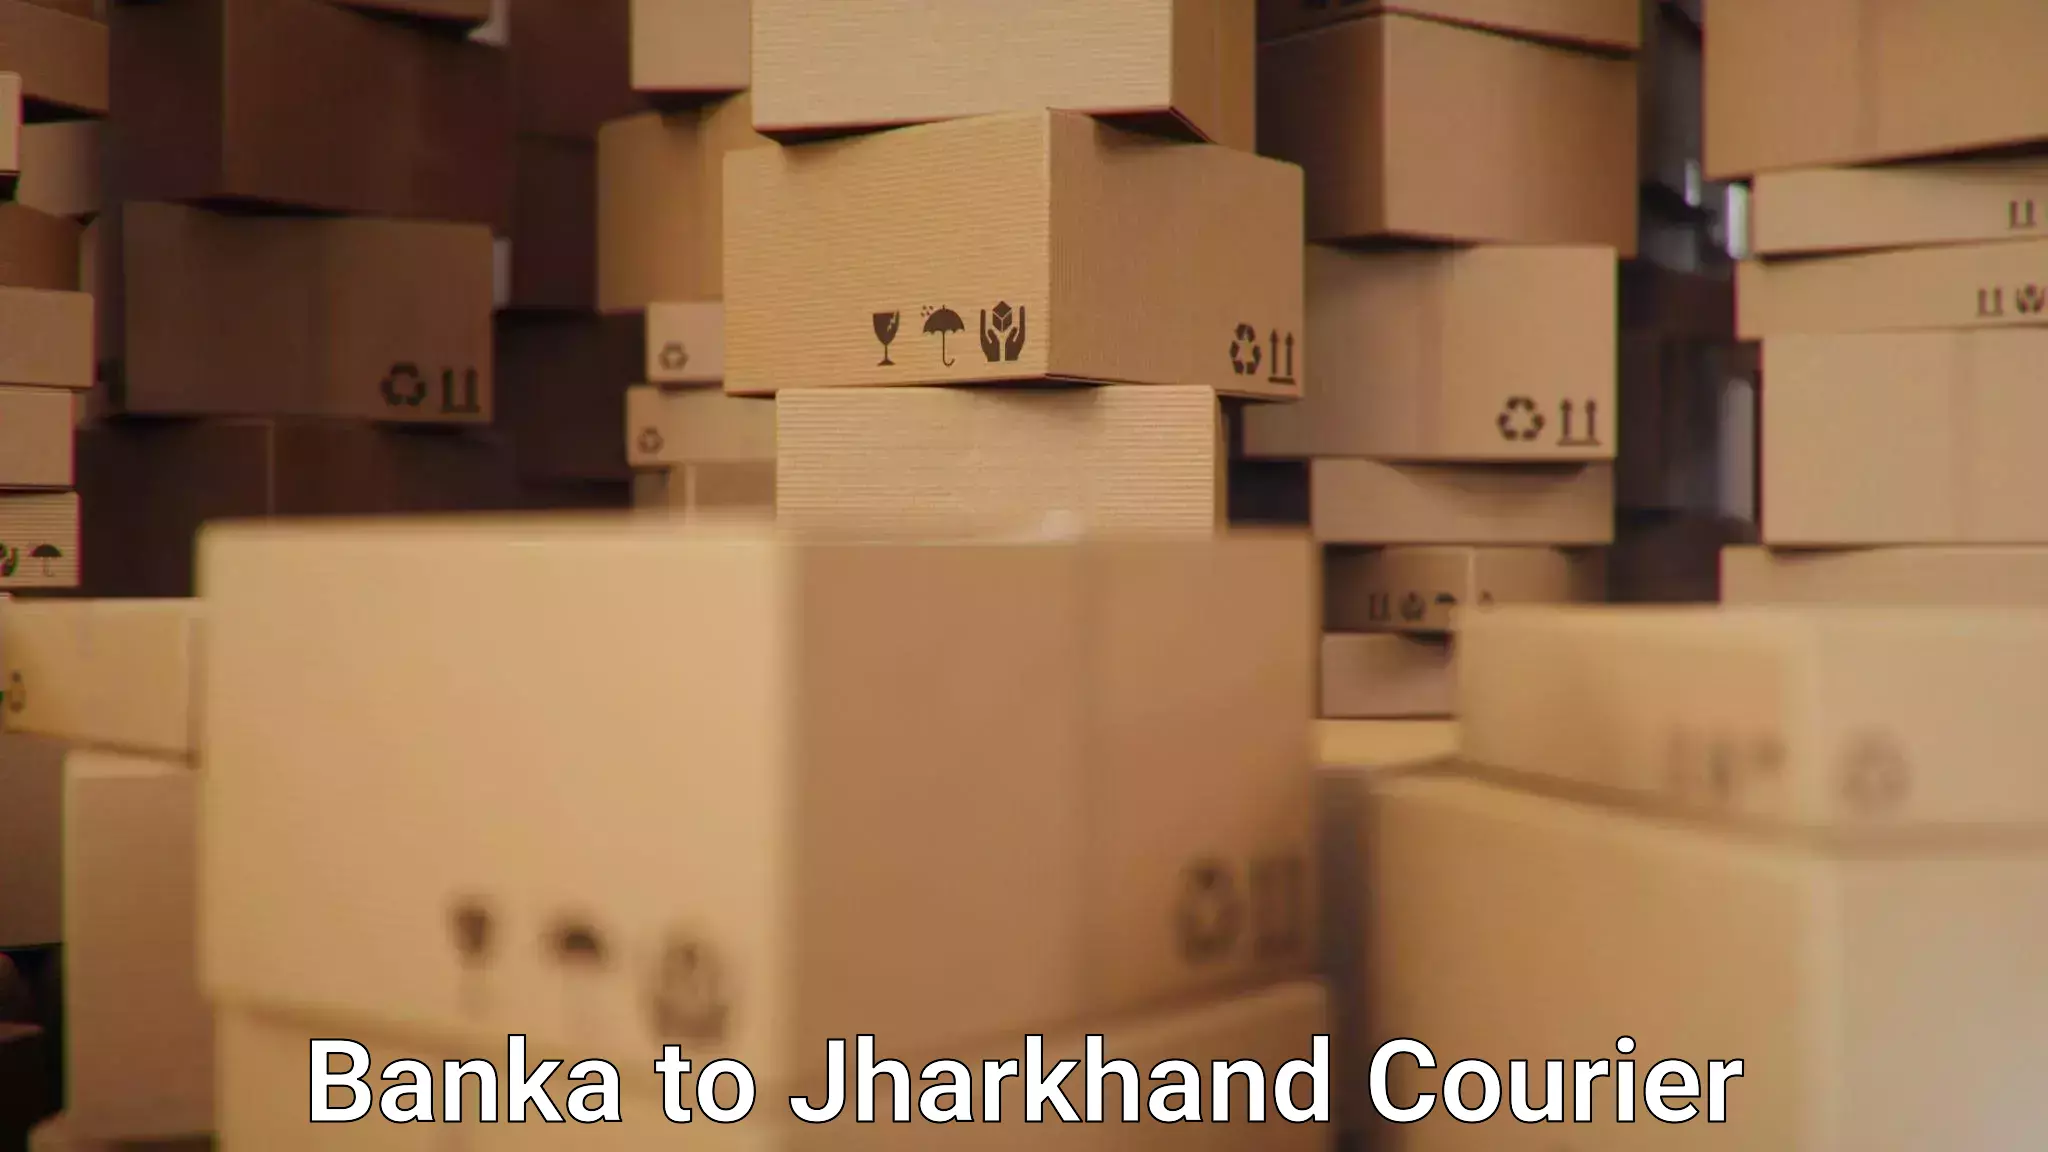 Delivery service partnership Banka to Jamshedpur